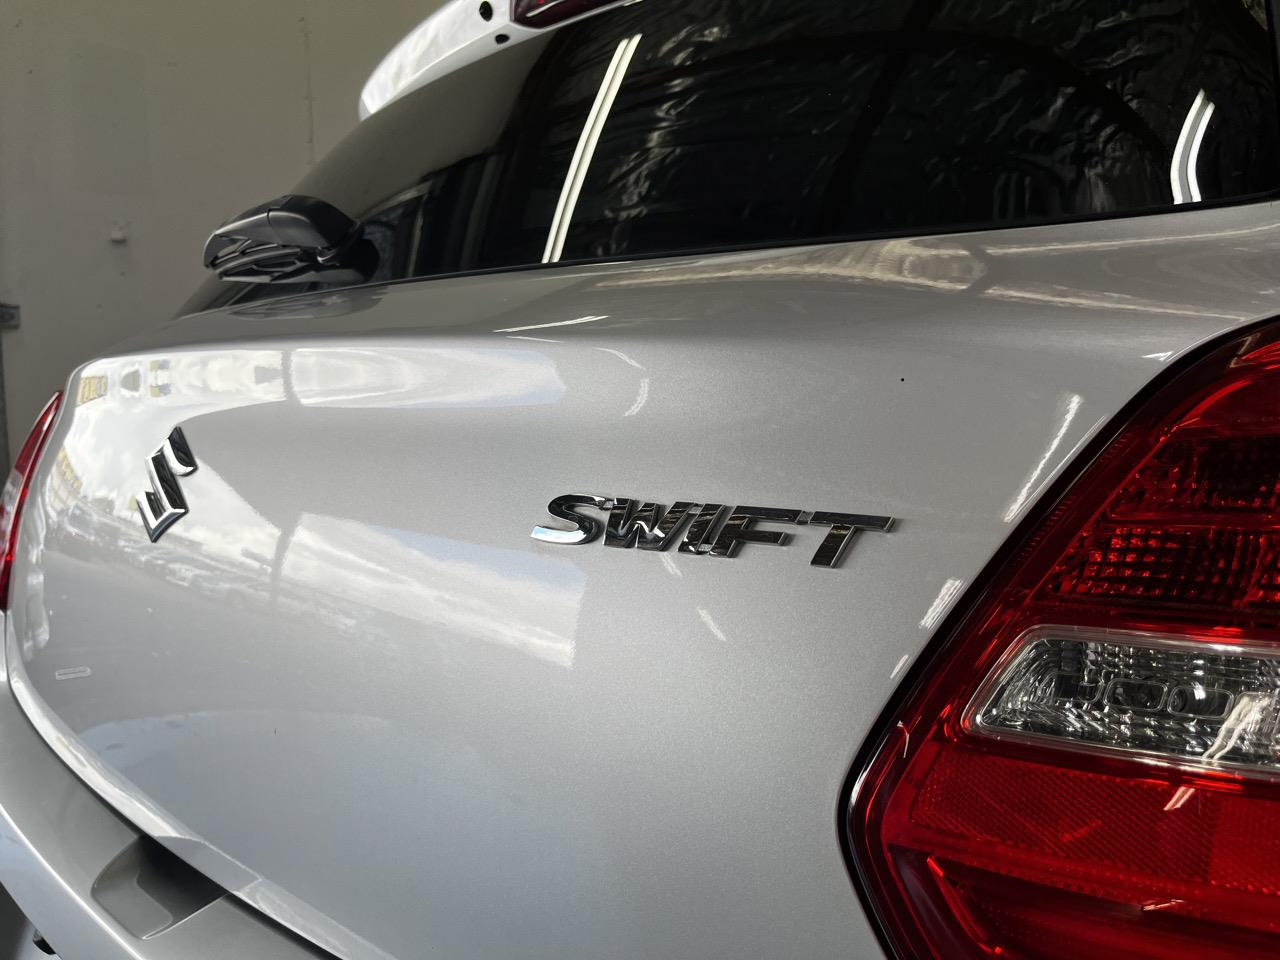 2017 Suzuki Swift